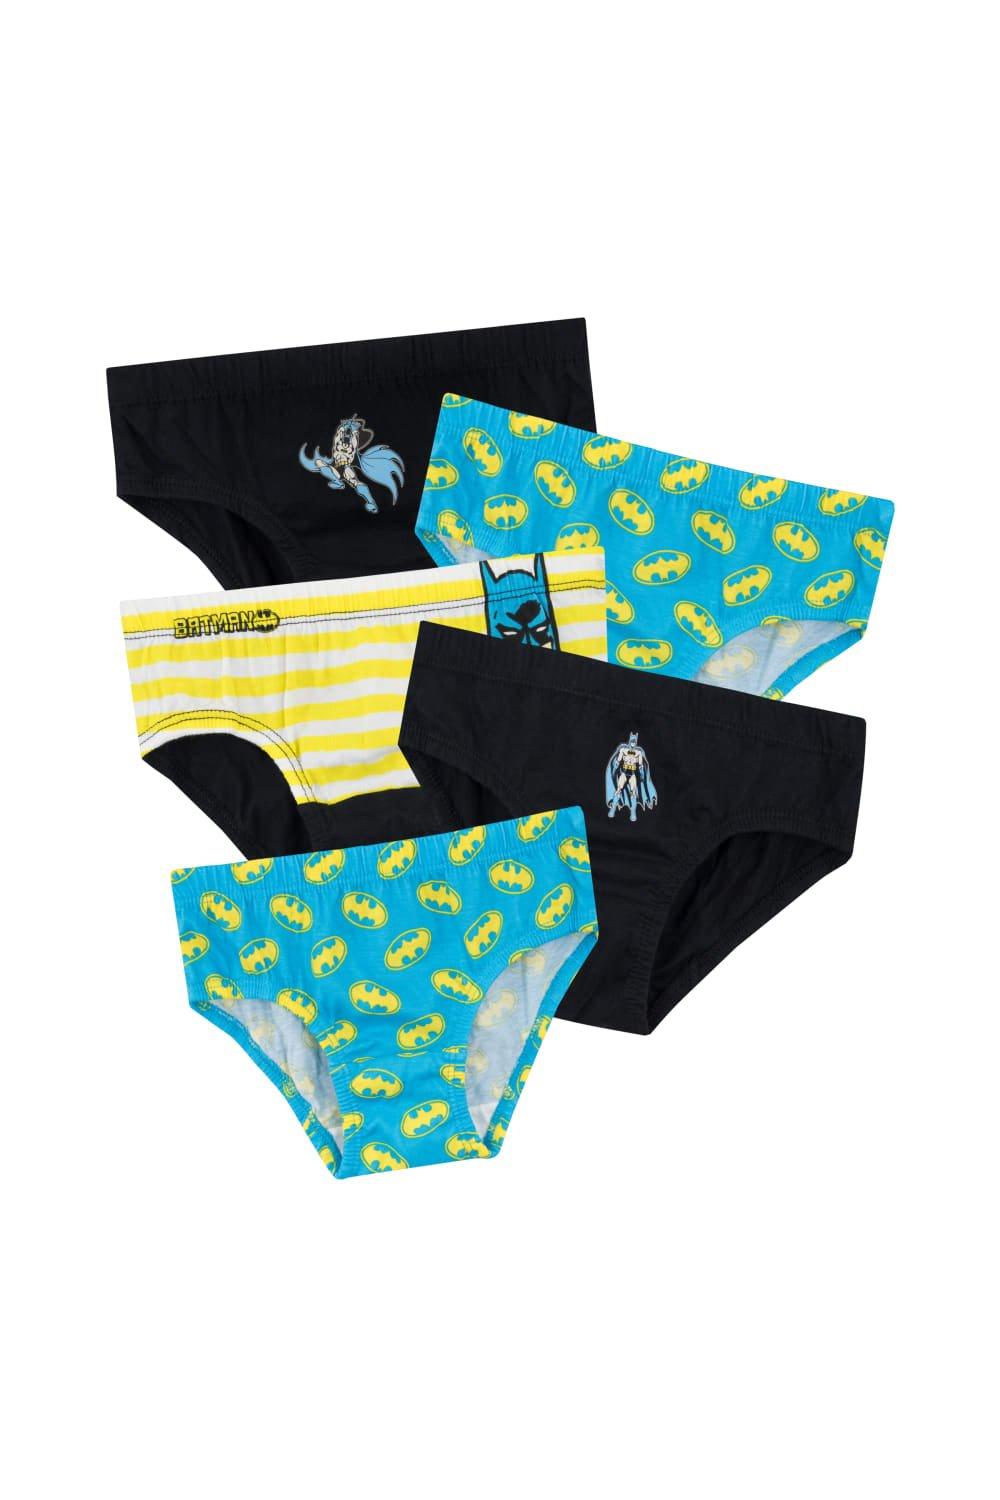 Batman Underwear Briefs 5 Pack